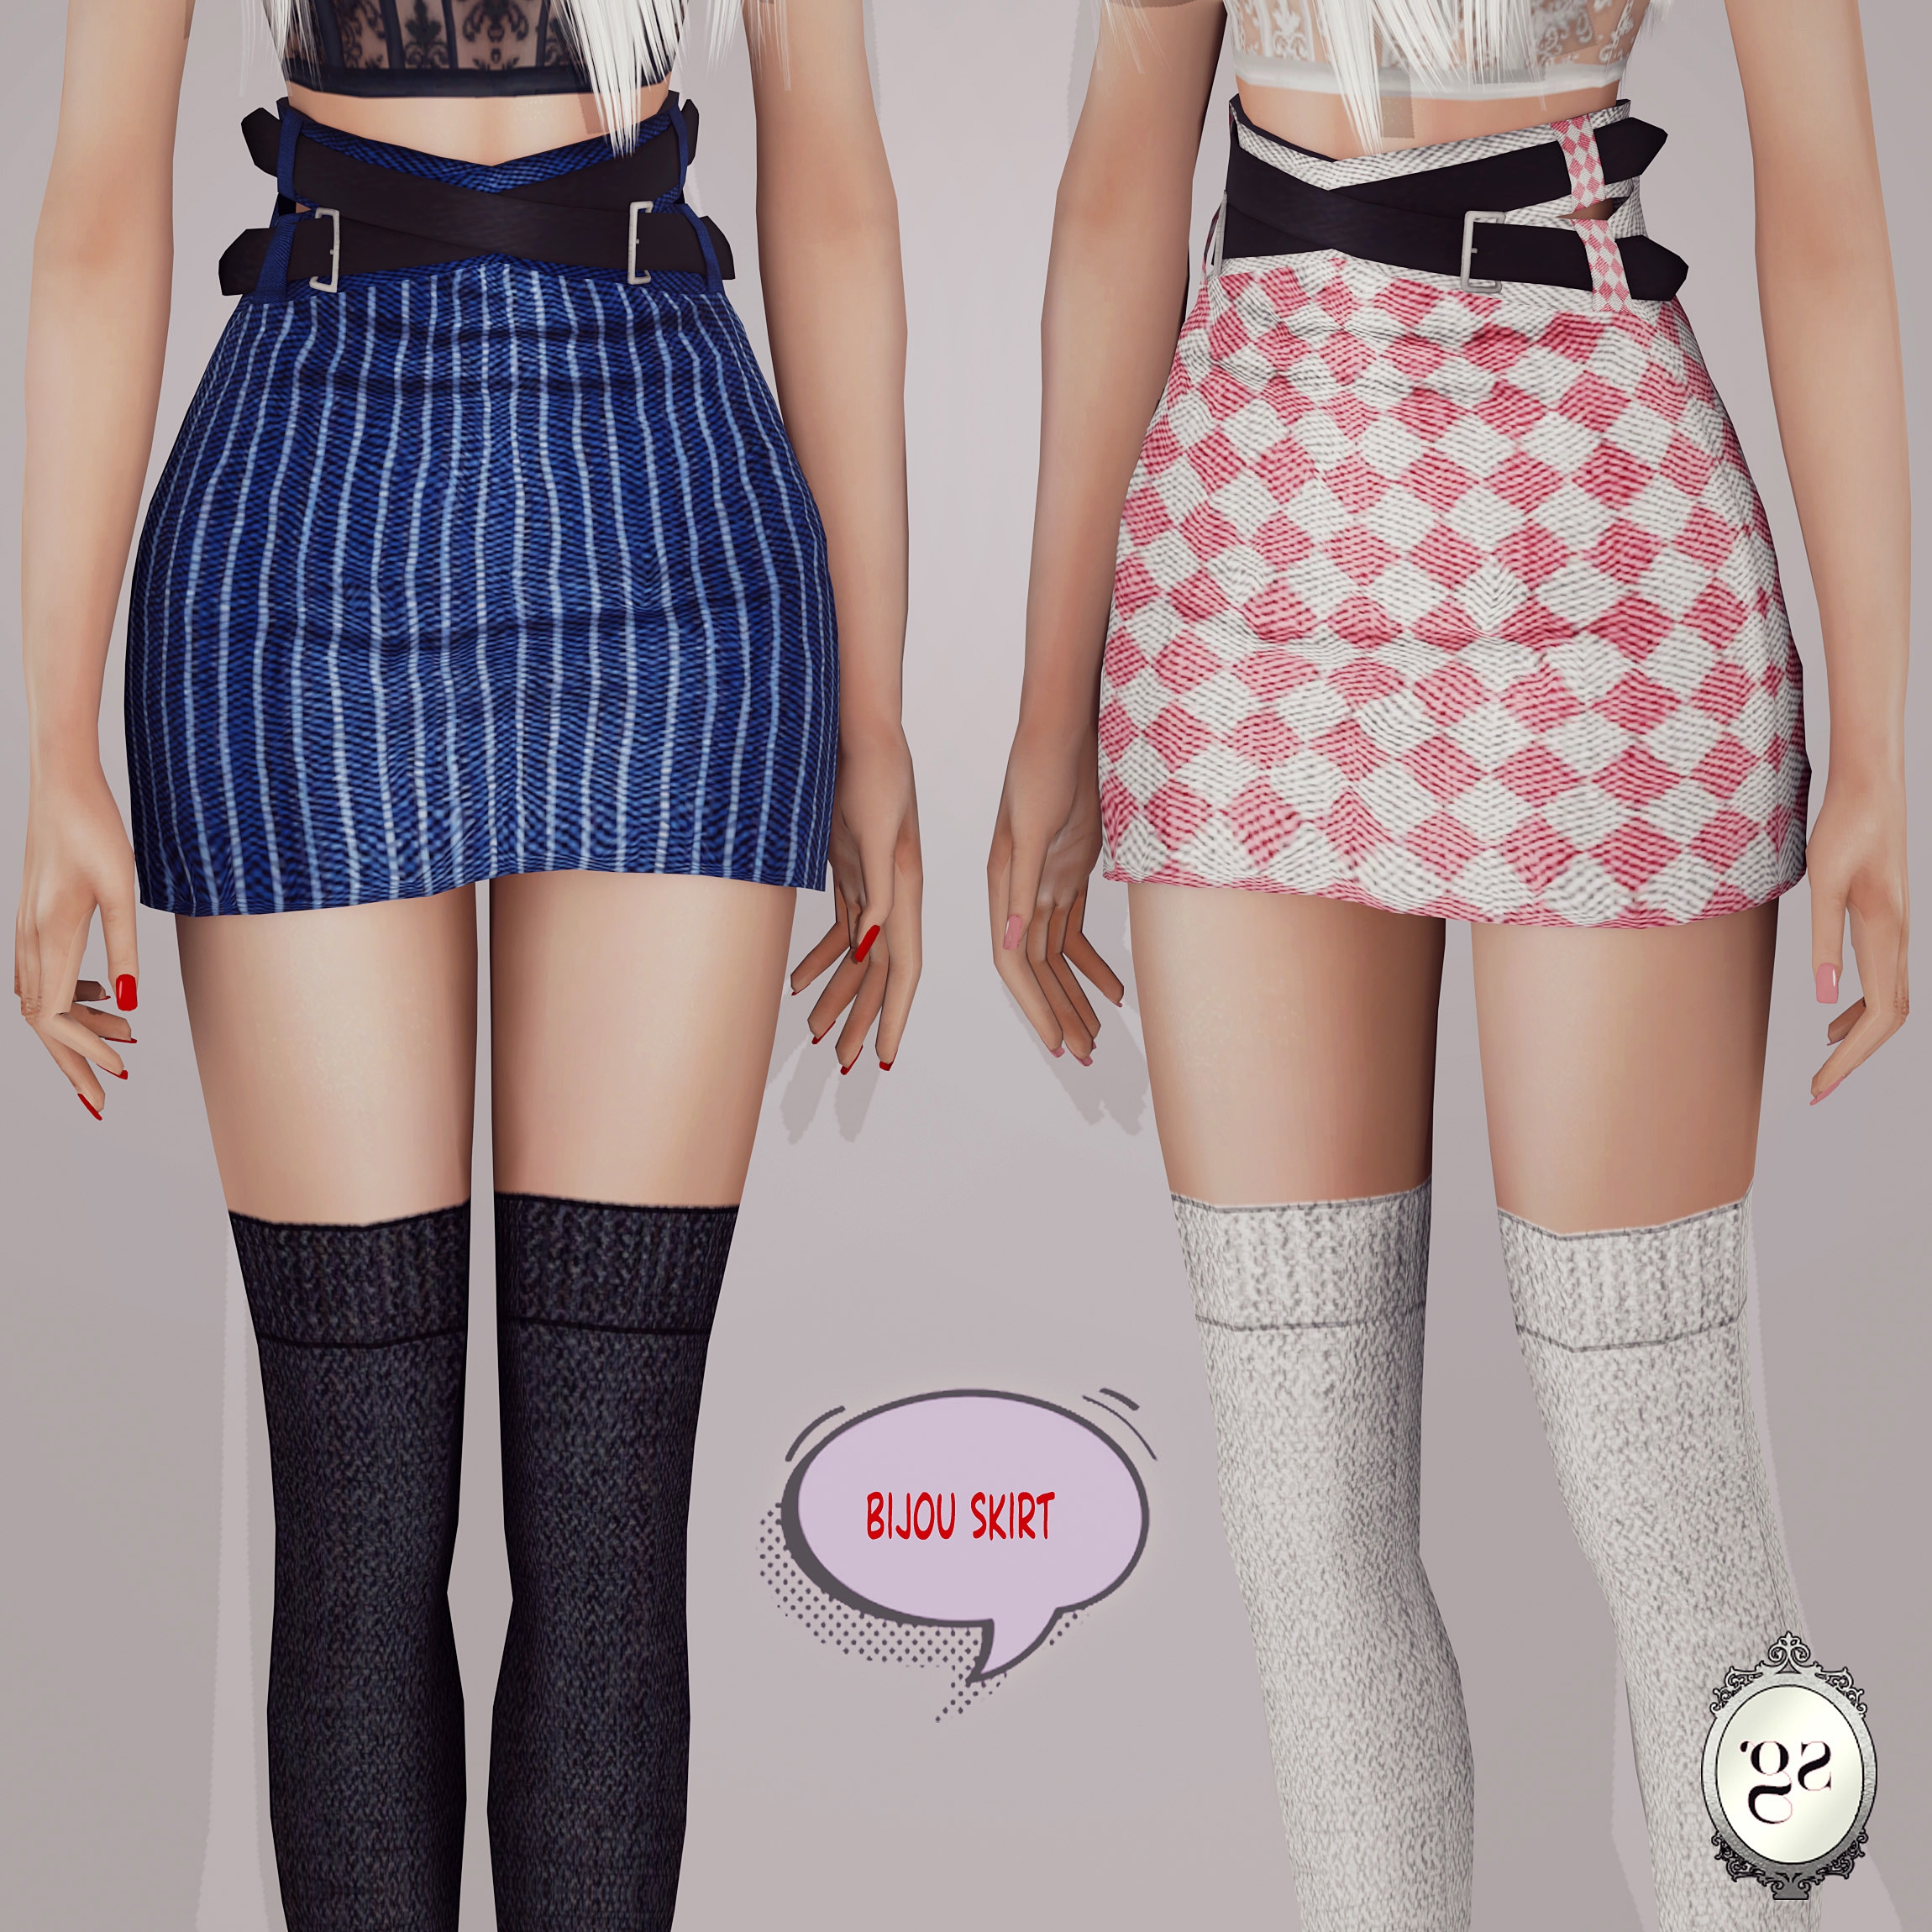 Bijou skirt - The Sims 4 Create a Sim - CurseForge